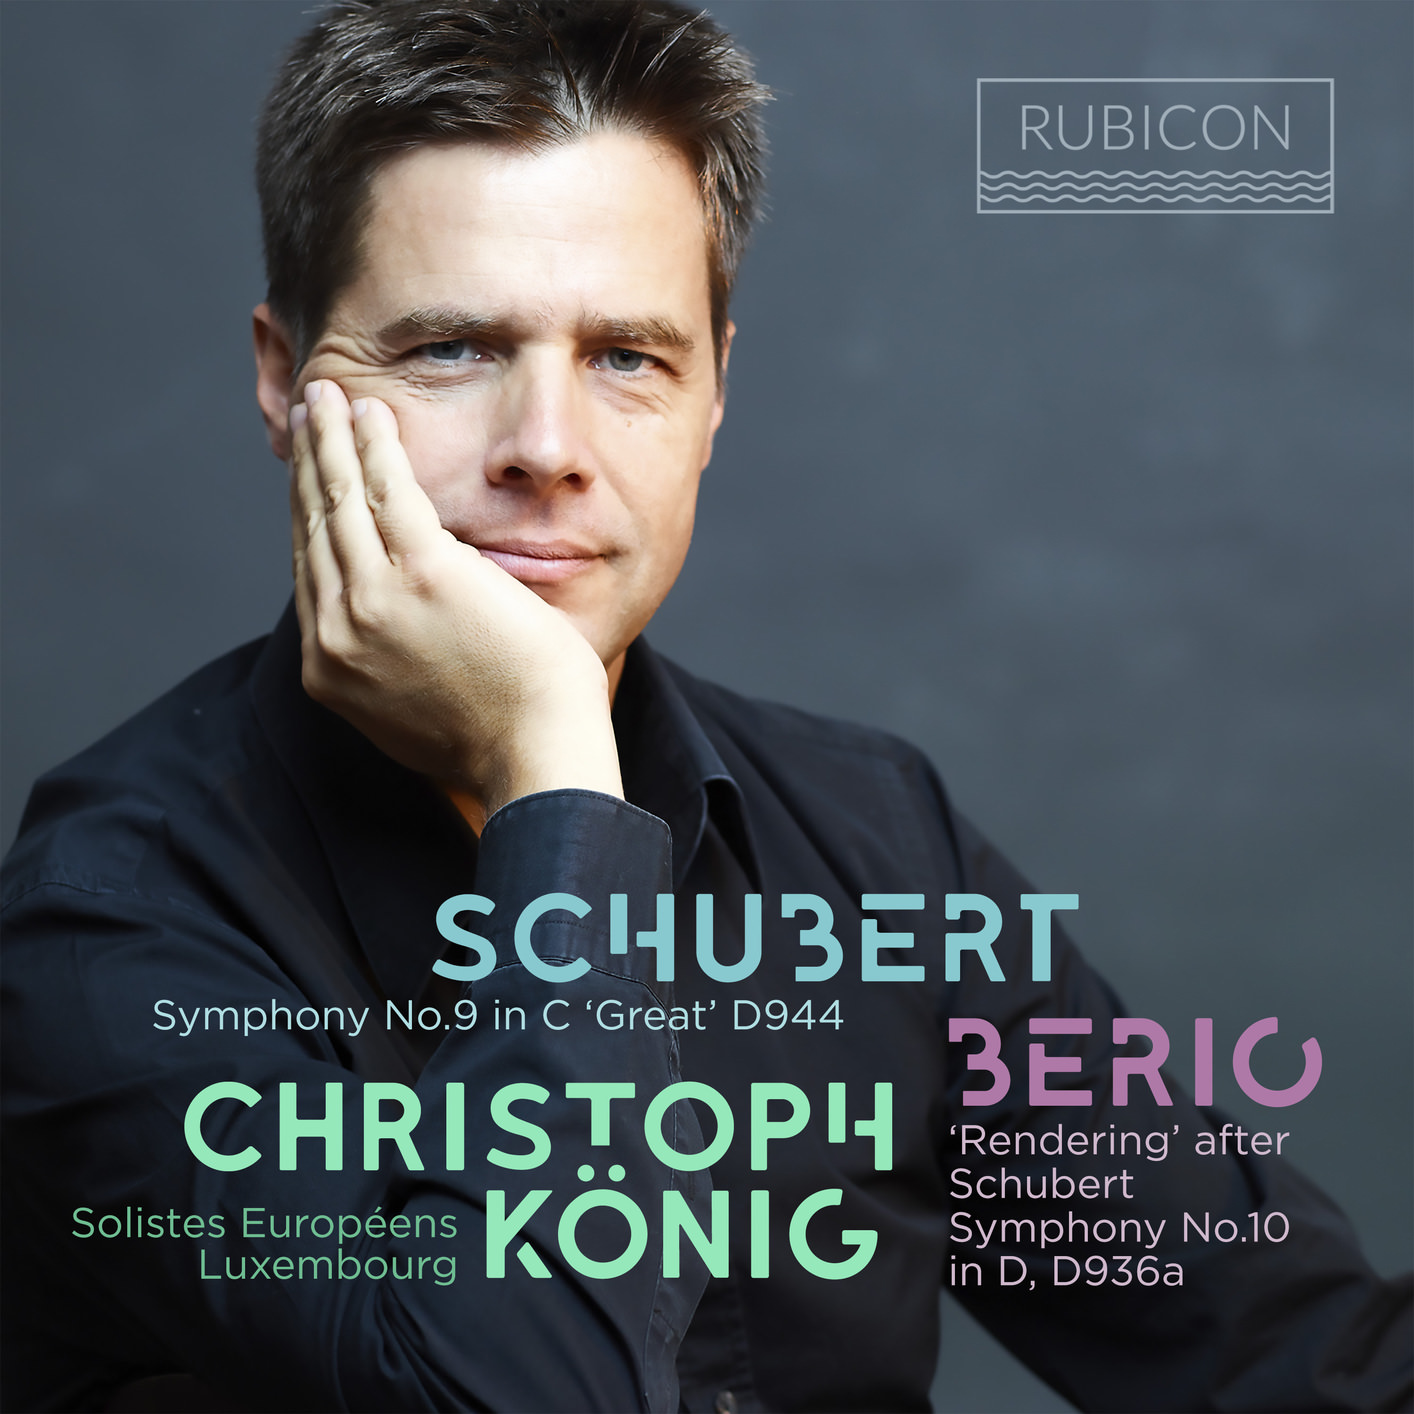 Christoph Koonig & Soloists Europeens Luxembourg - Schubert / Berio (2018) [FLAC 24bit/48kHz]